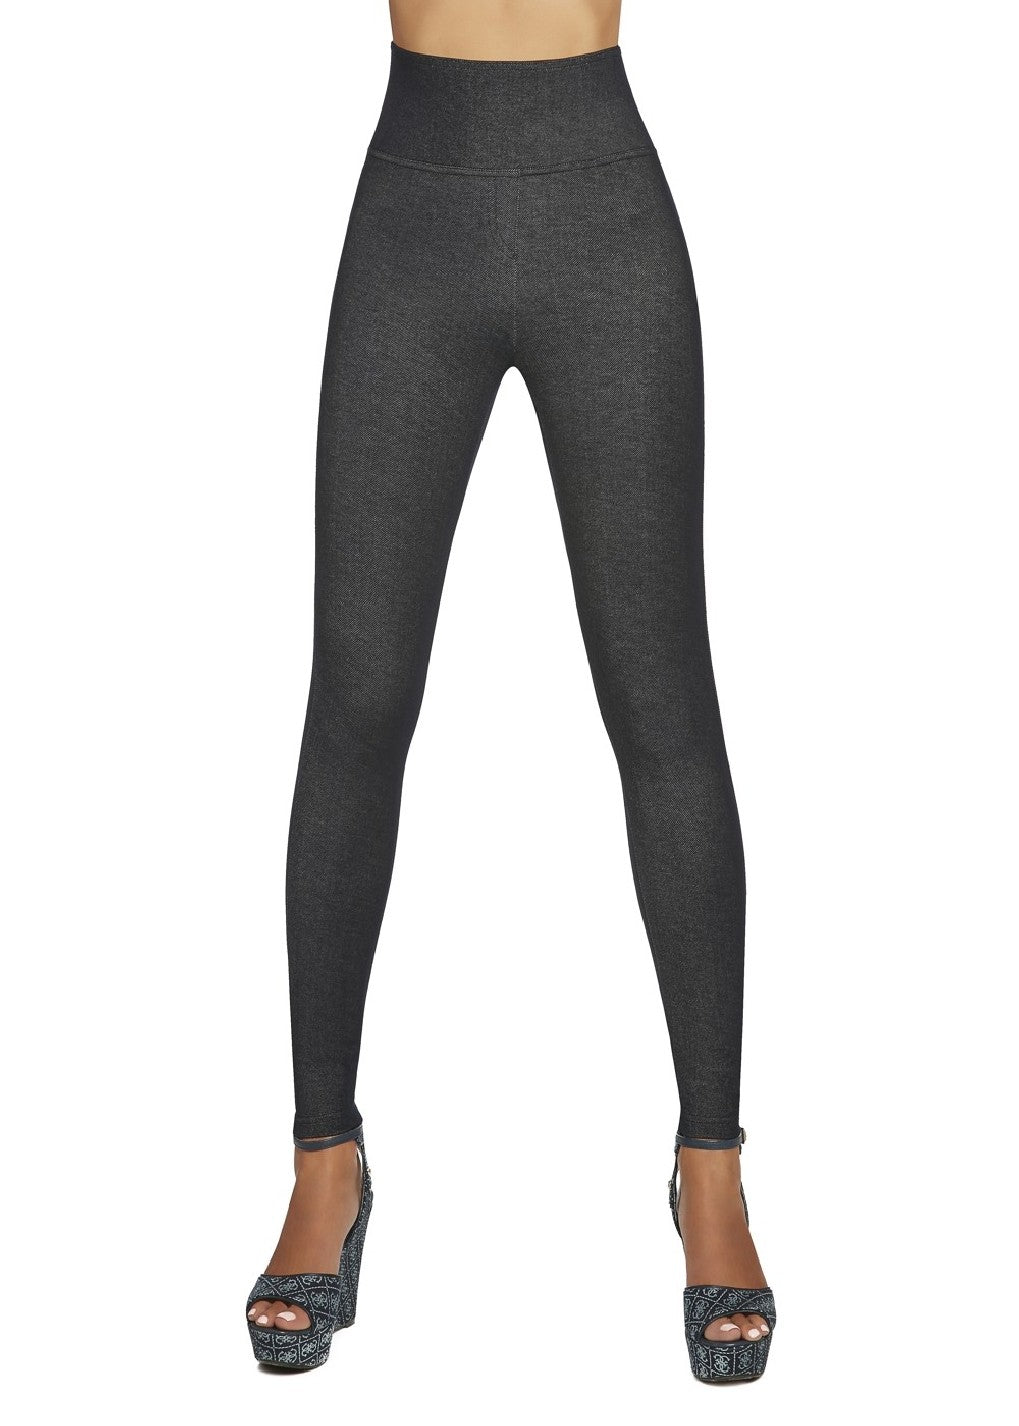 BasBleu Blair Leggings - High waisted light weight dark denim look leggings with a deep strong elasticated waistband.